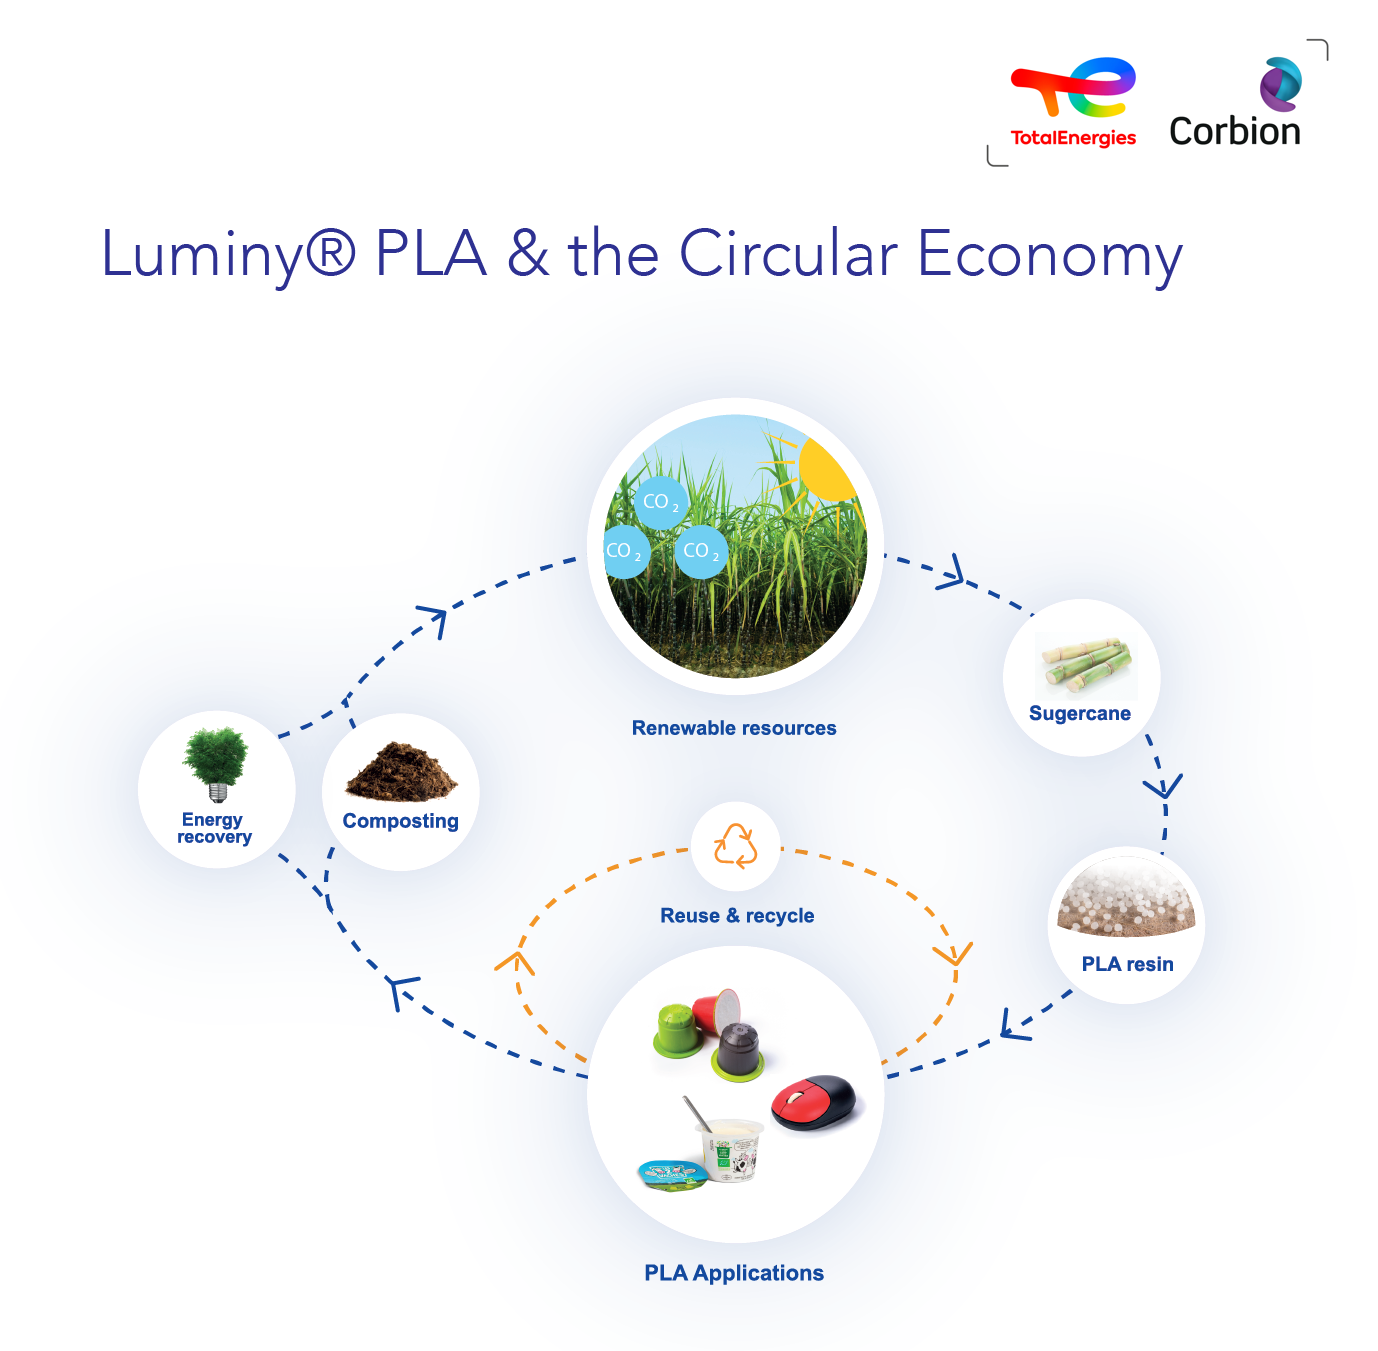 Luminy® PLA lifecycle